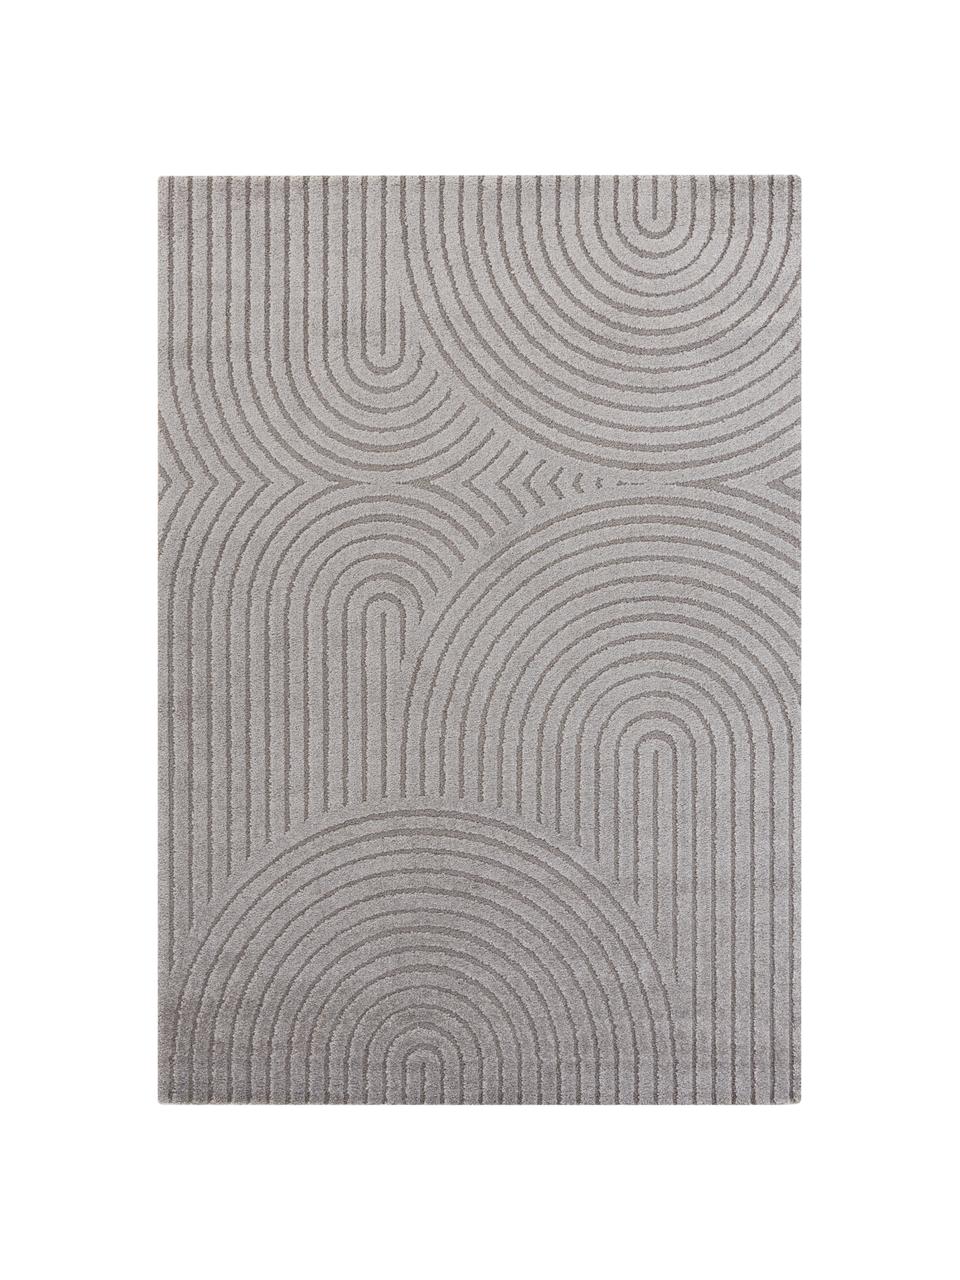 Tapis gris clair/gris rectangulaire à poils ras Pangalo, 40 % polyester, 60 % polypropylène, Gris clair, gris, larg. 120 x long. 170 cm (taille S)